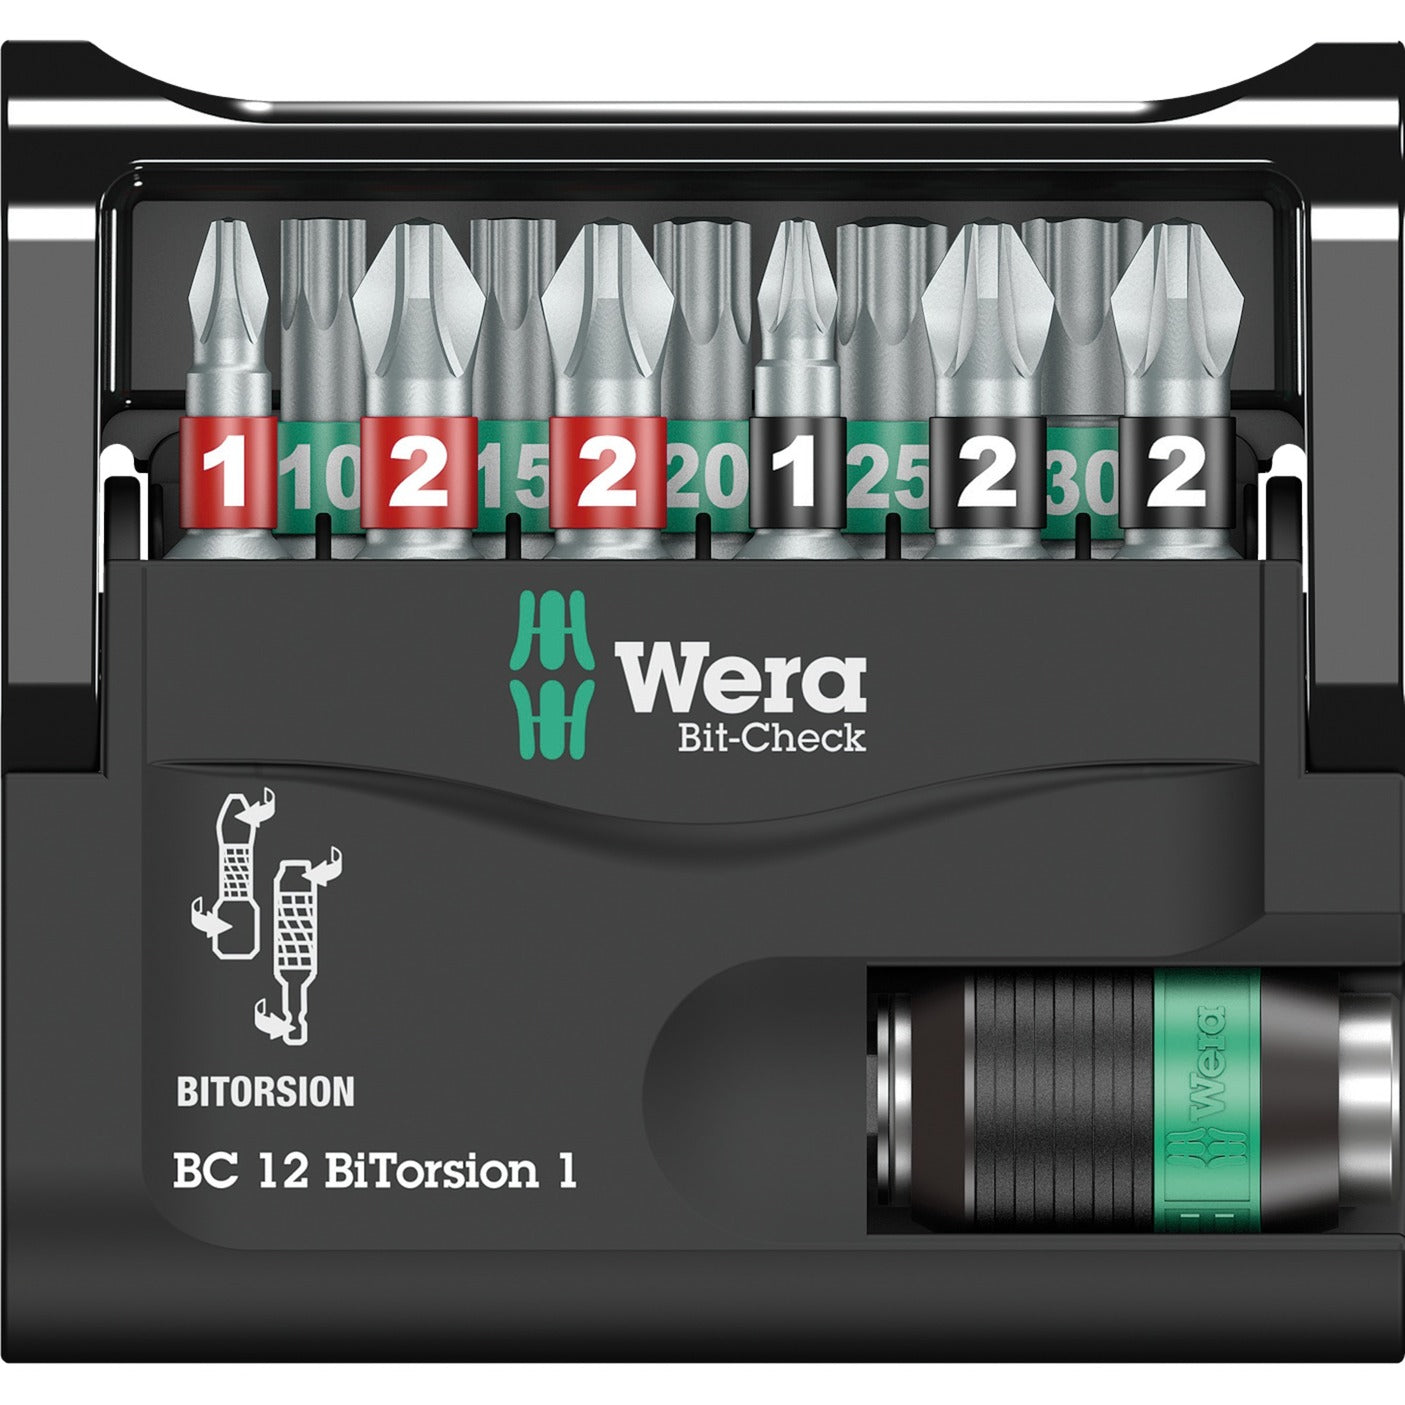 Wera Bit-Check 12 Bitorsion 1